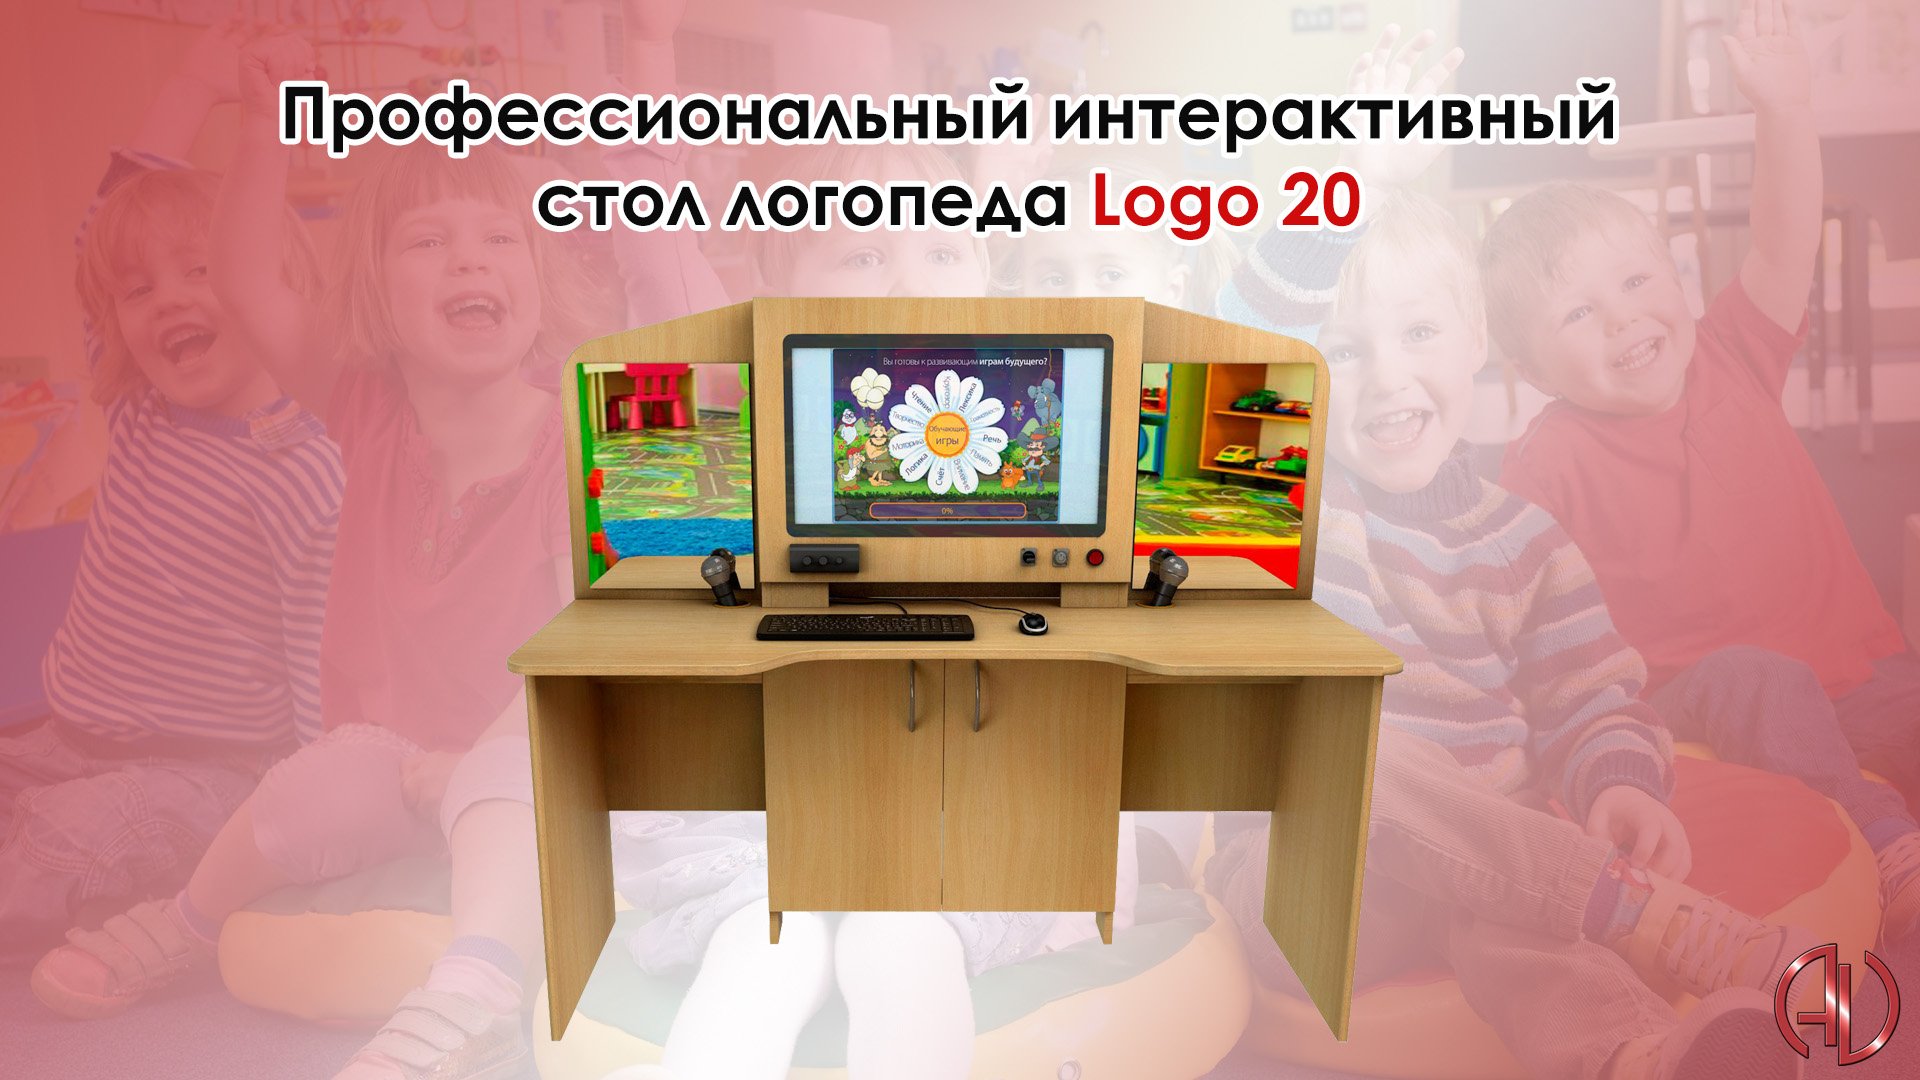 Стол логопеда цифровой образовательный интерактивный